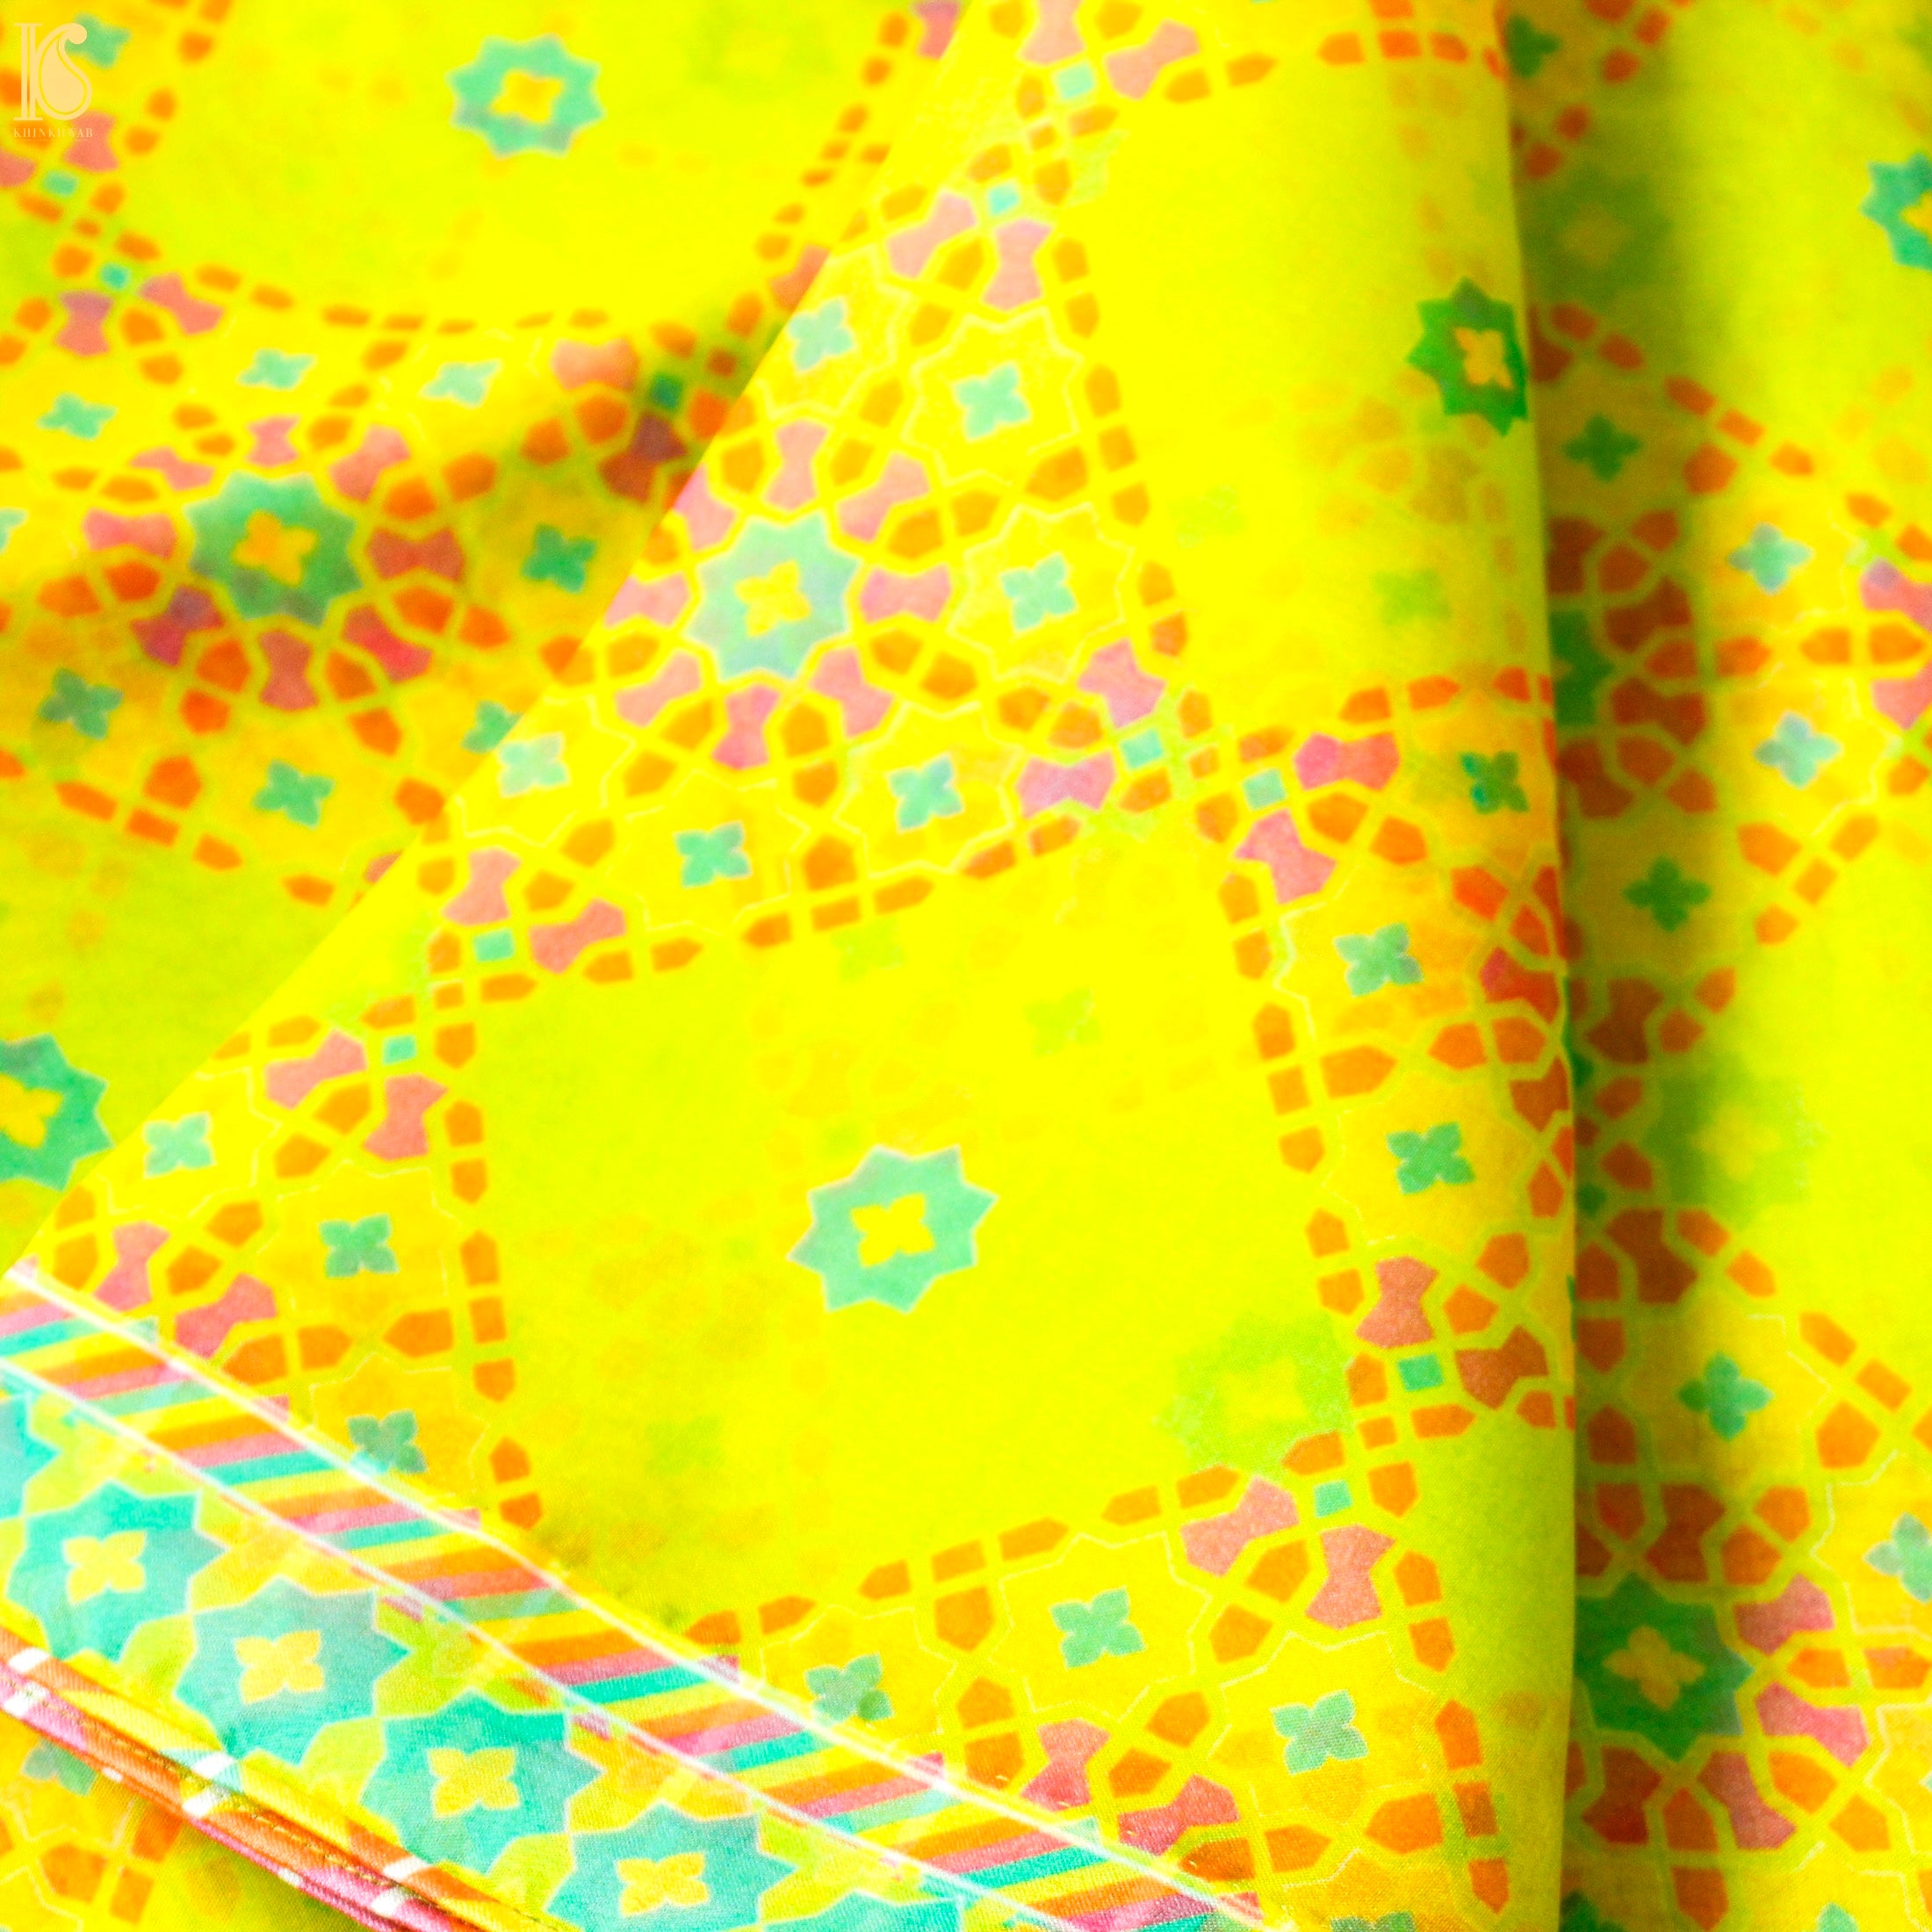 NİLÜFER - Chartreuse Yellow Pure Organza Print Saree - Khinkhwab